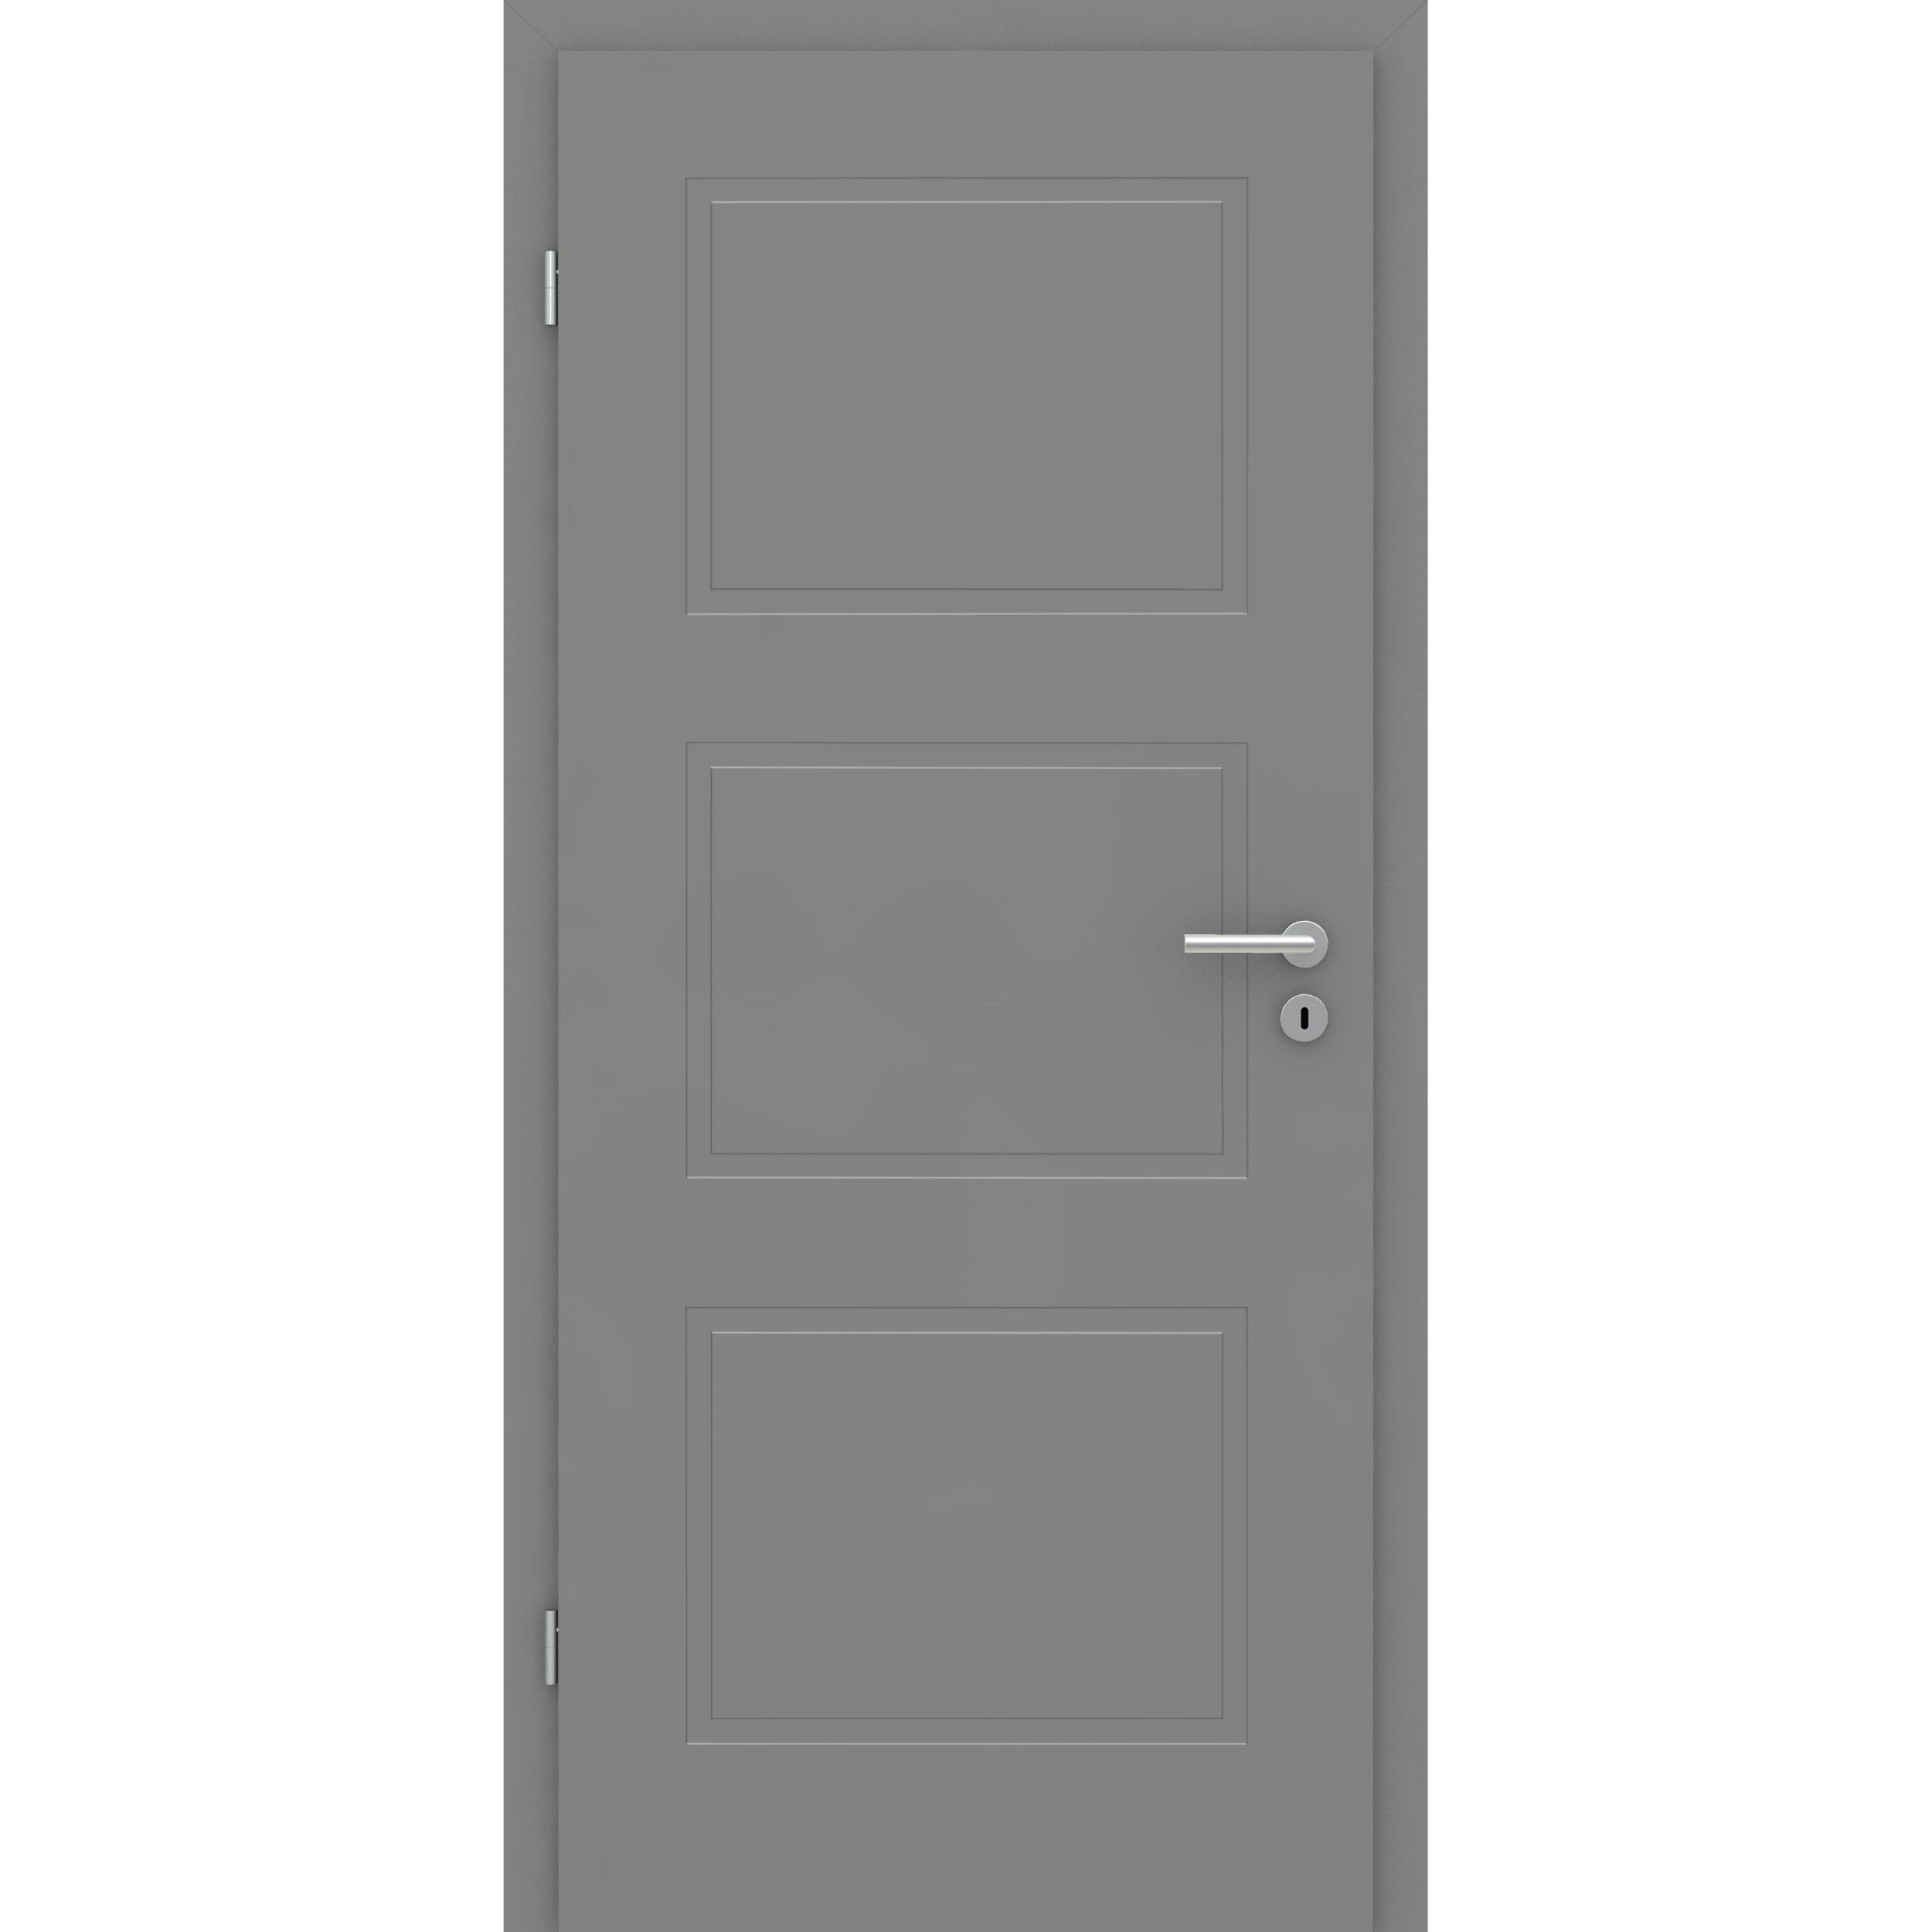 Wohnungseingangstür grau 3 Kassetten Designkante SK1 / KK3 - Modell Stiltür M37